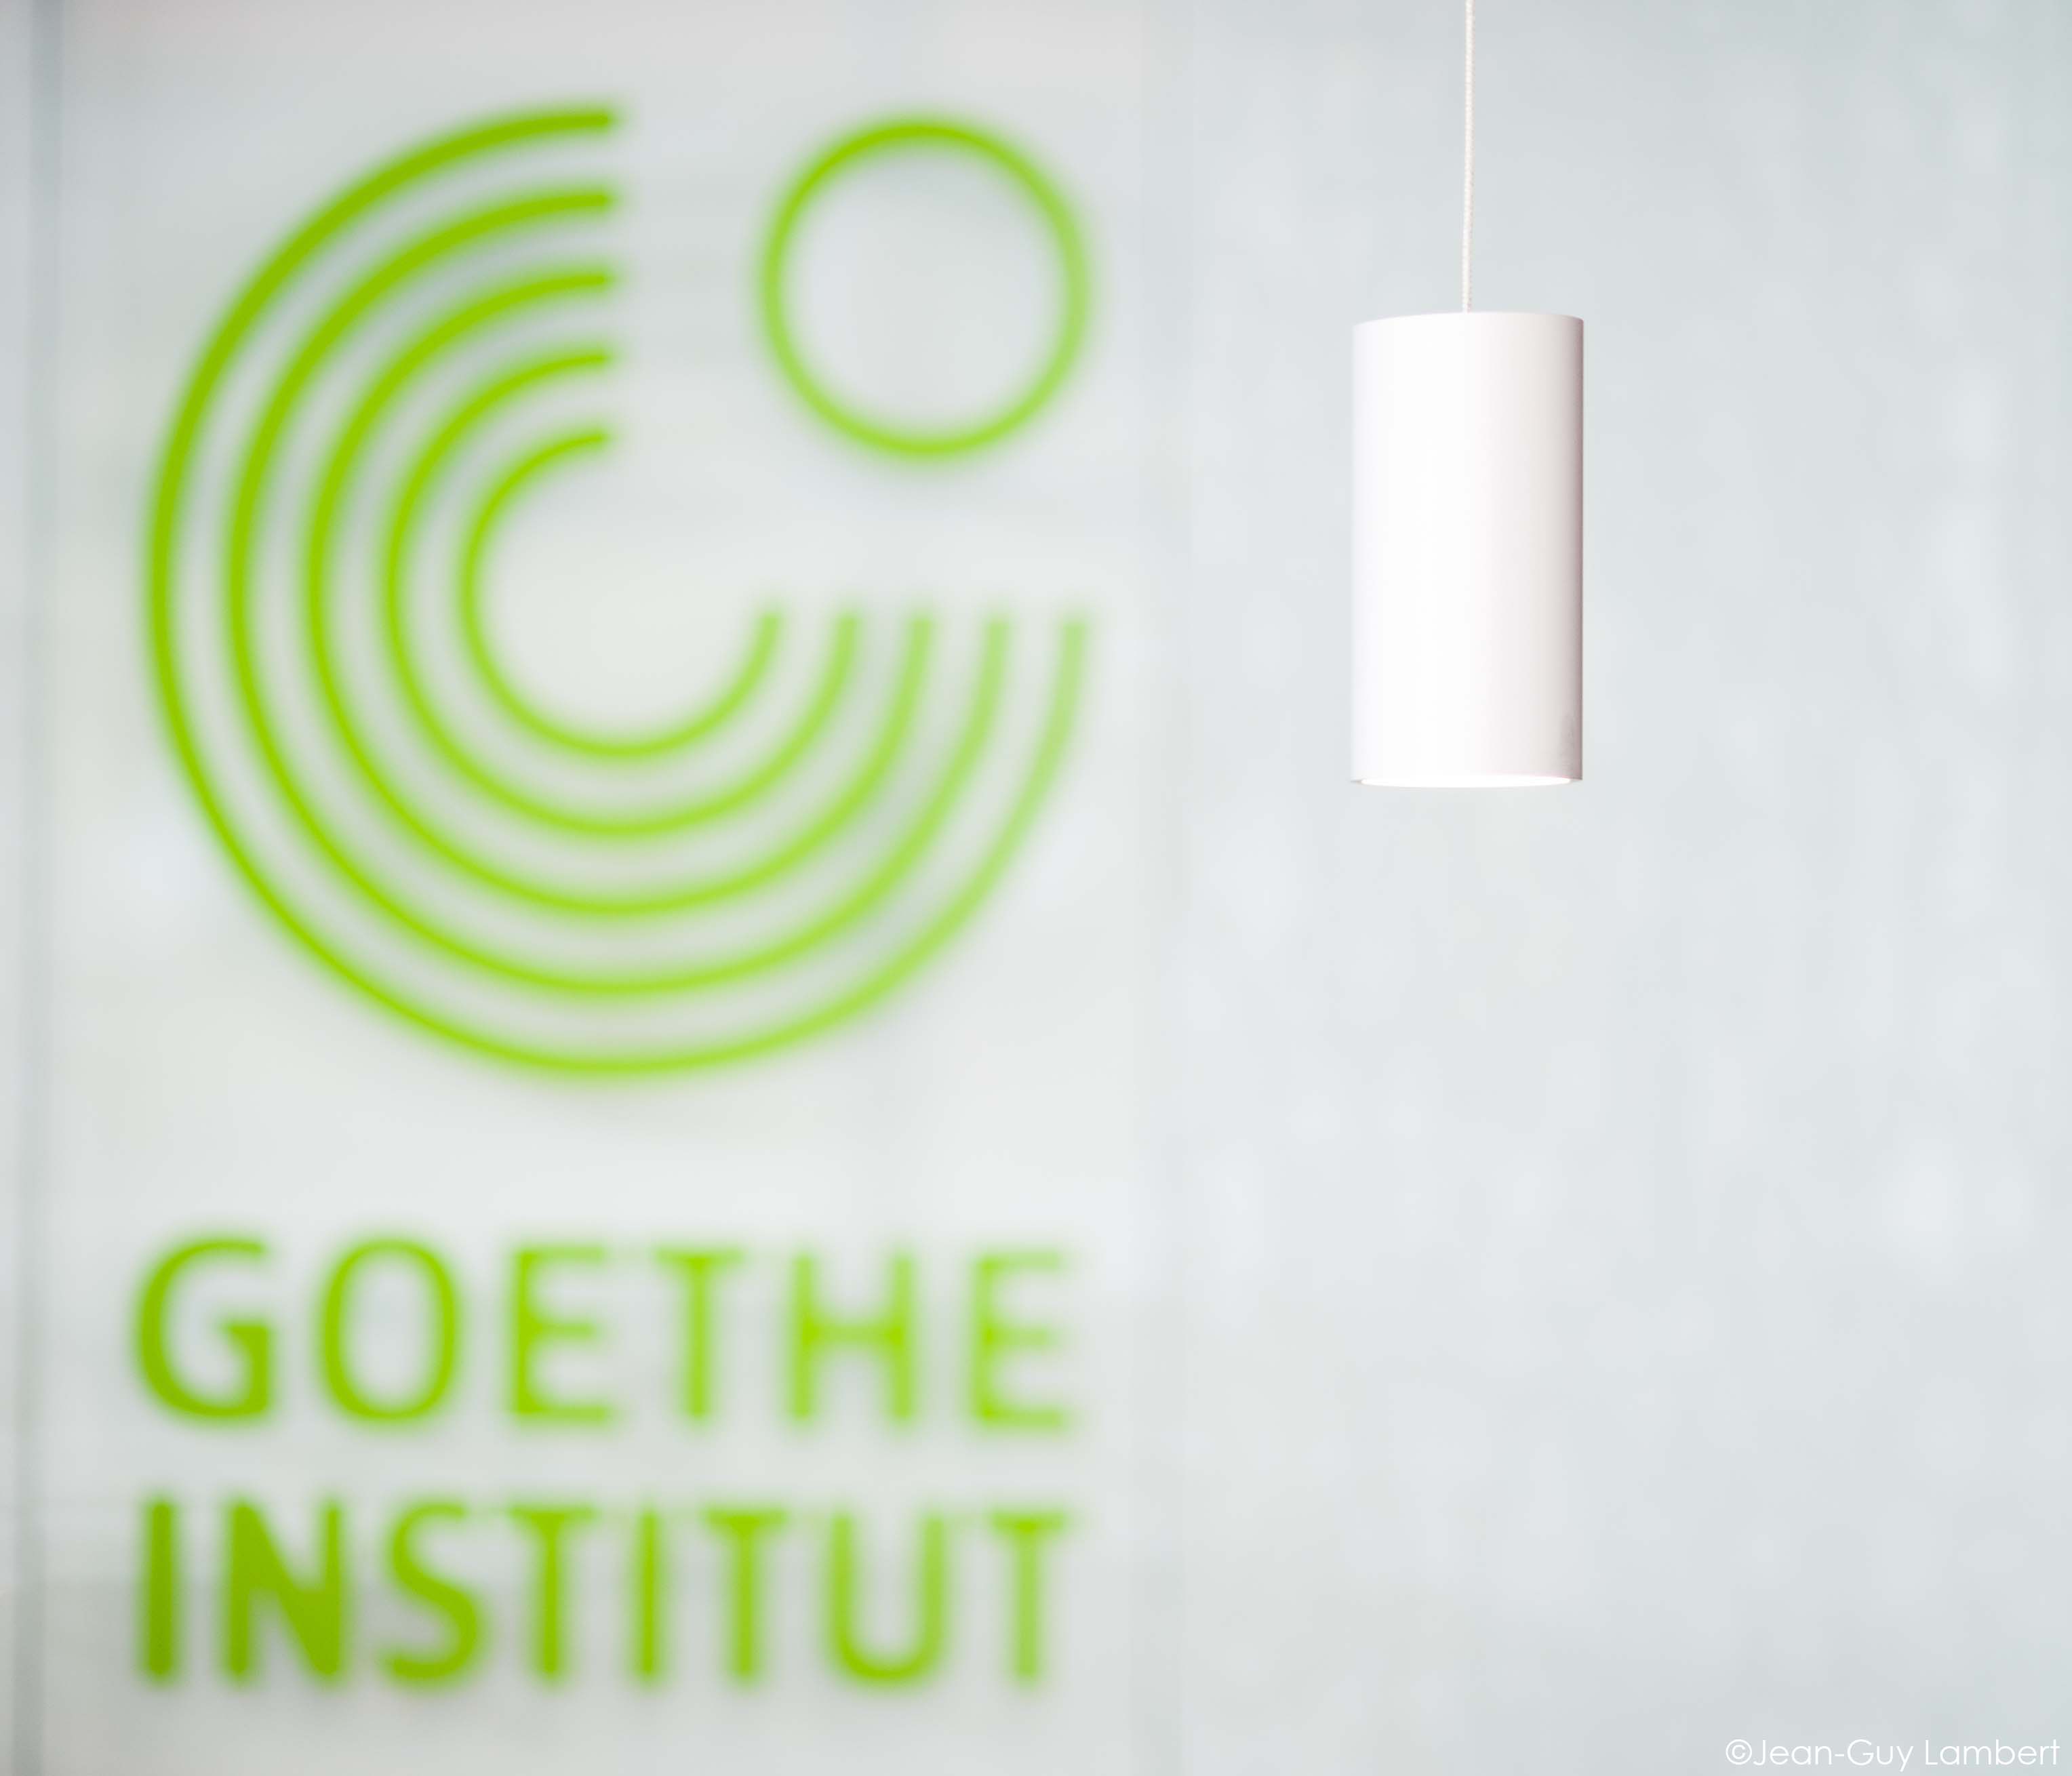 Nouveaux locaux  pour le Goethe – Institut Montréal